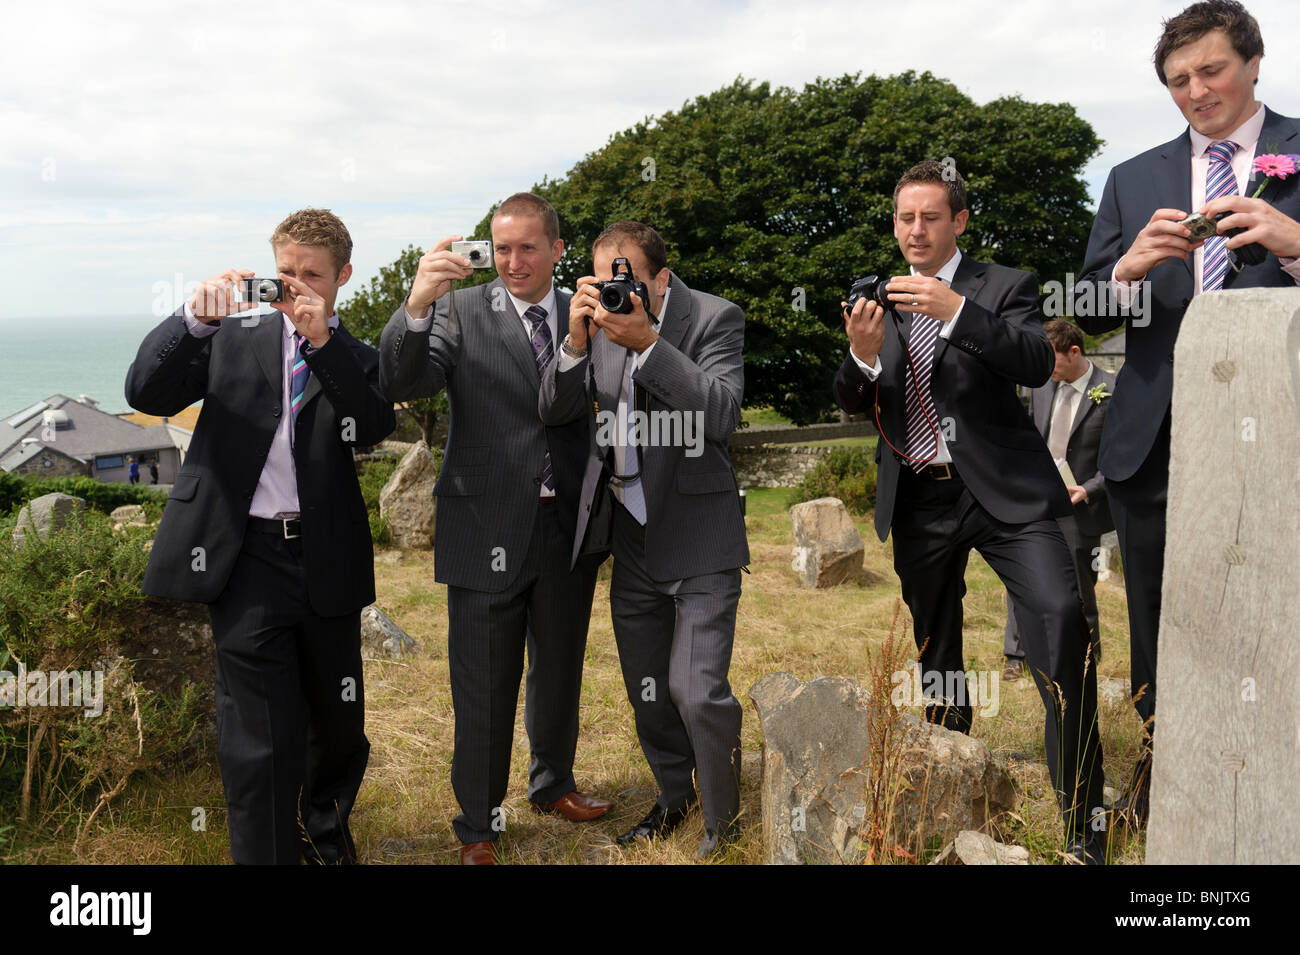 Fünf Männer tragen Anzüge Gäste Hochzeit fotografieren auf ihren digitalen  Kameras, UK Stockfotografie - Alamy